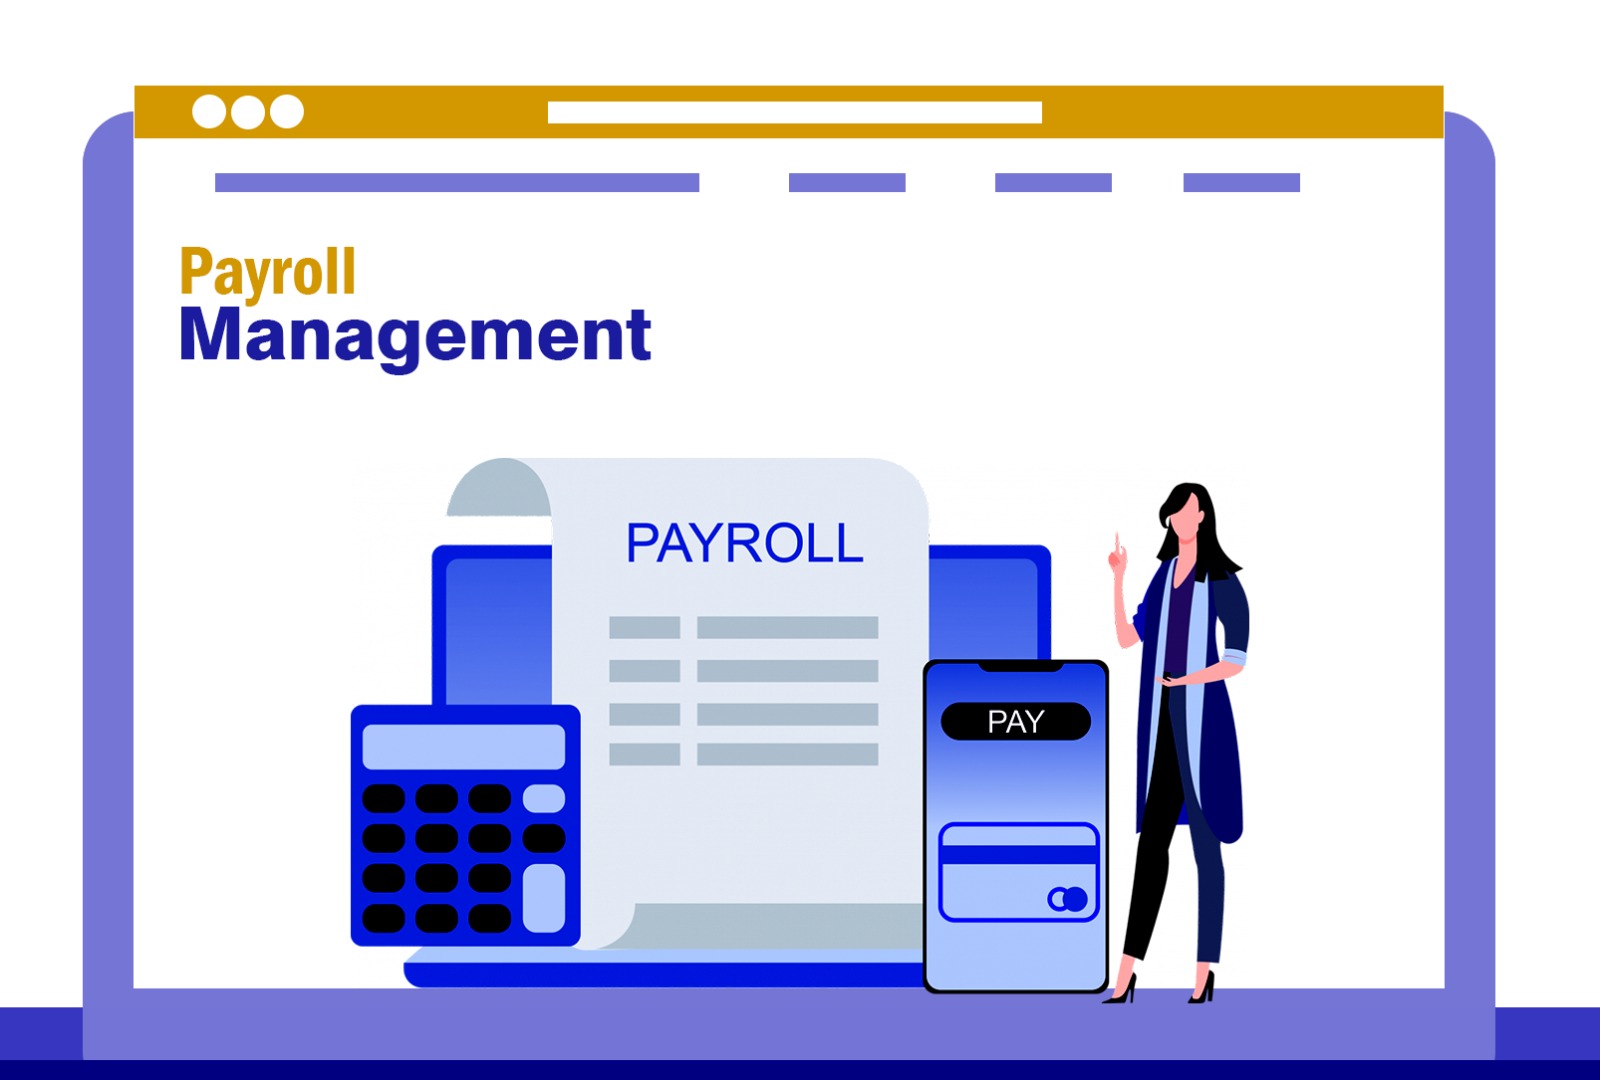  Payroll Management